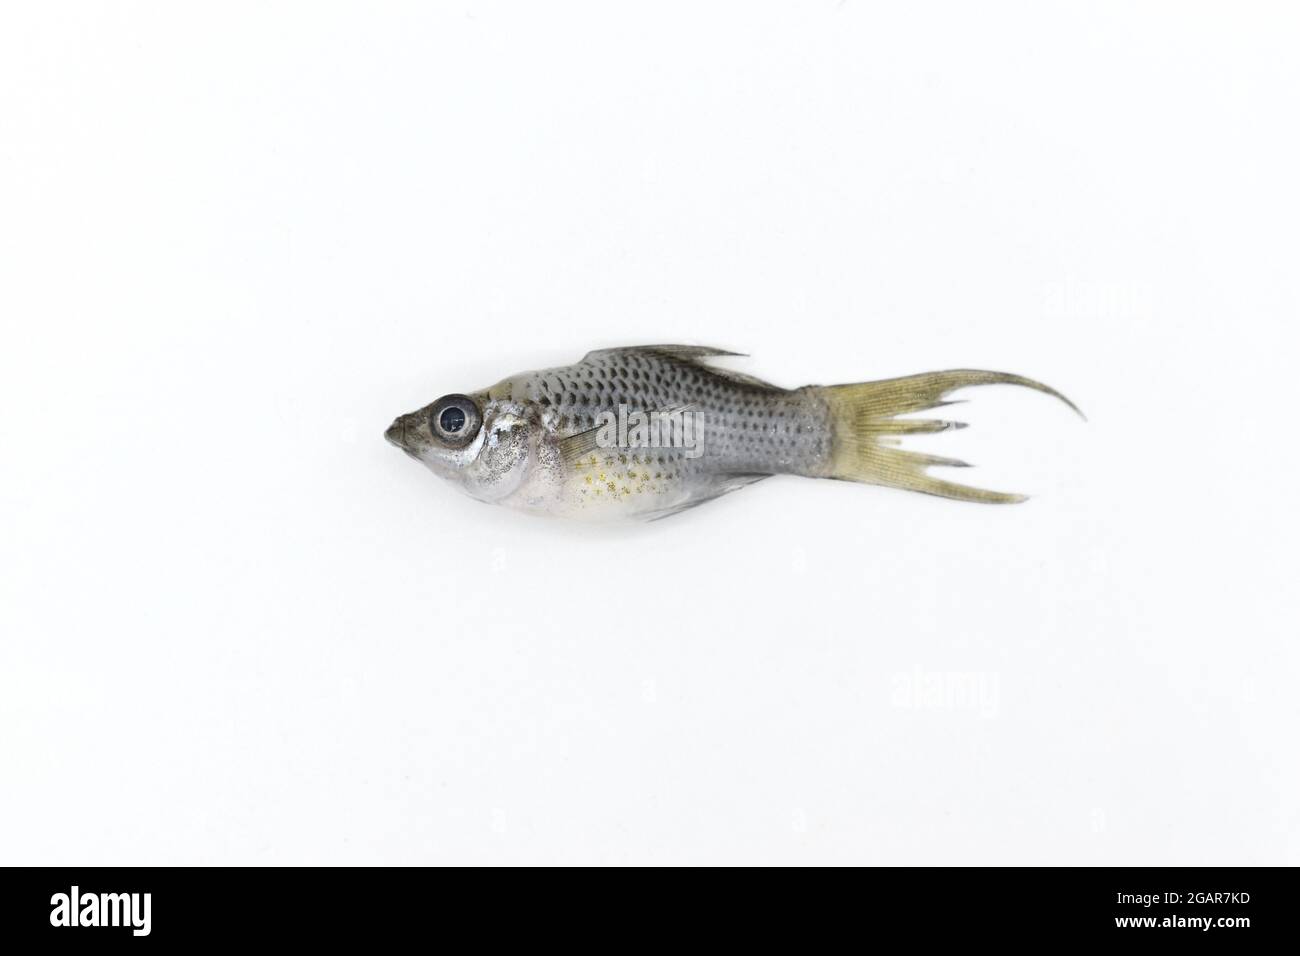 Nana grigia il pesce molly è morto a causa della scarsa qualità dell'acqua, ad esempio l'avvelenamento da ammoniaca. Foto Stock